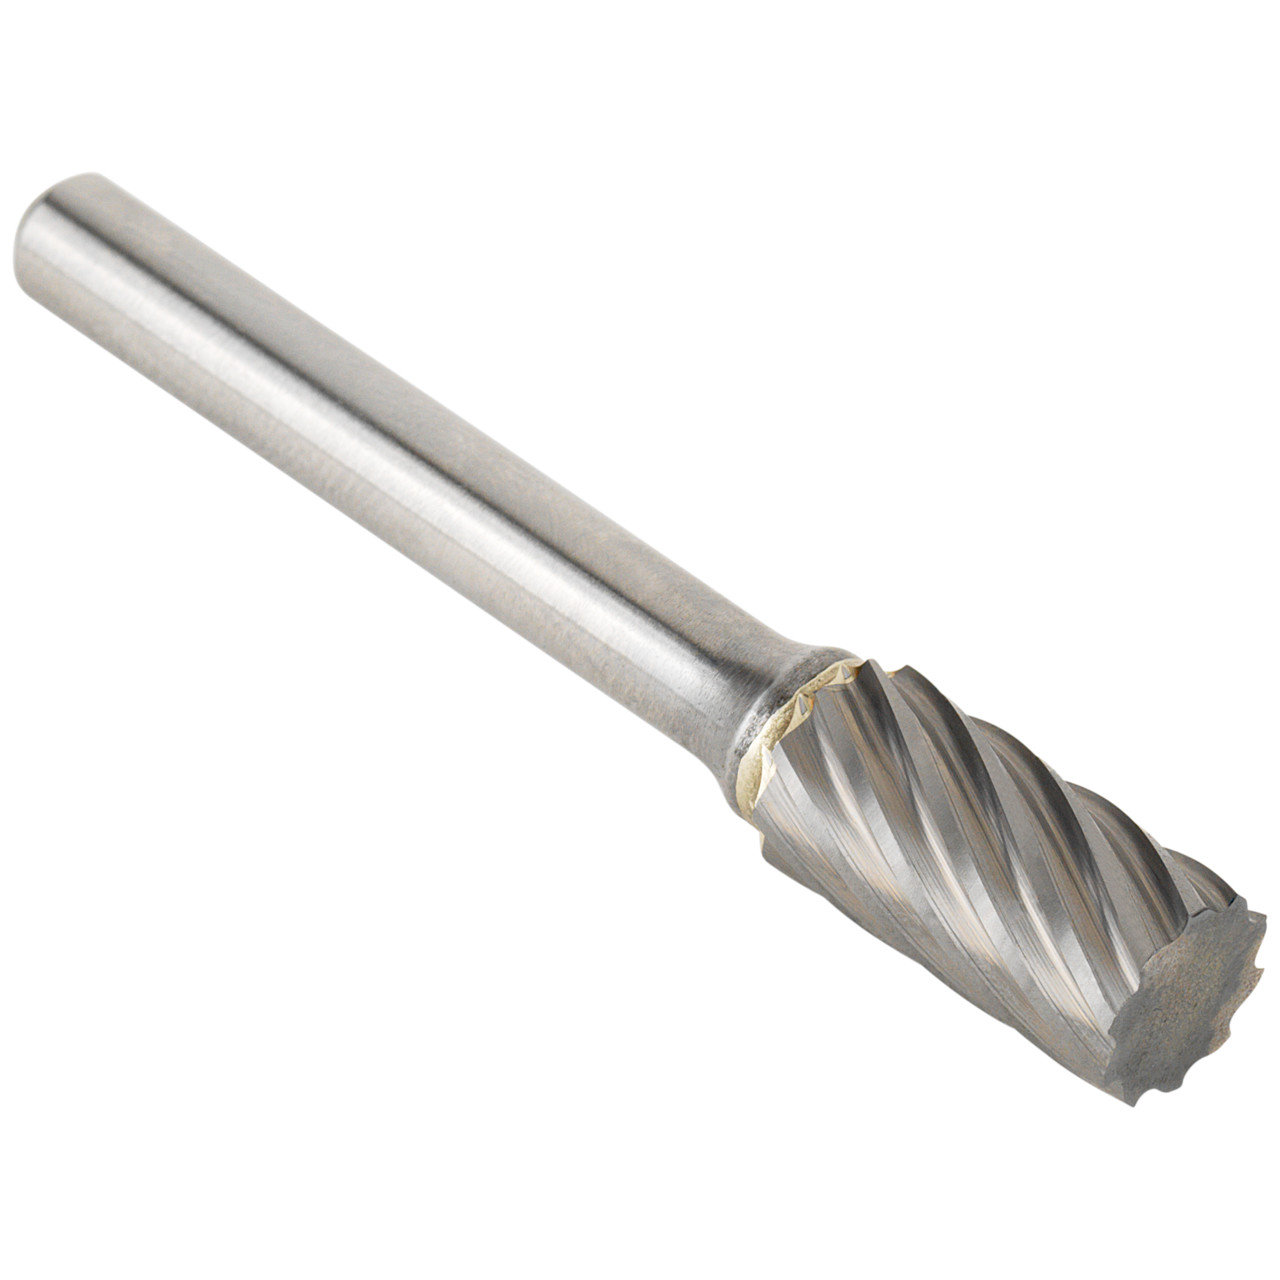 TYROLIT hardmetalen frees DxT-SxL 10x19-6x64 Voor roestvrij staal, vorm: 52ZYA - cilinder, Art. 34213608